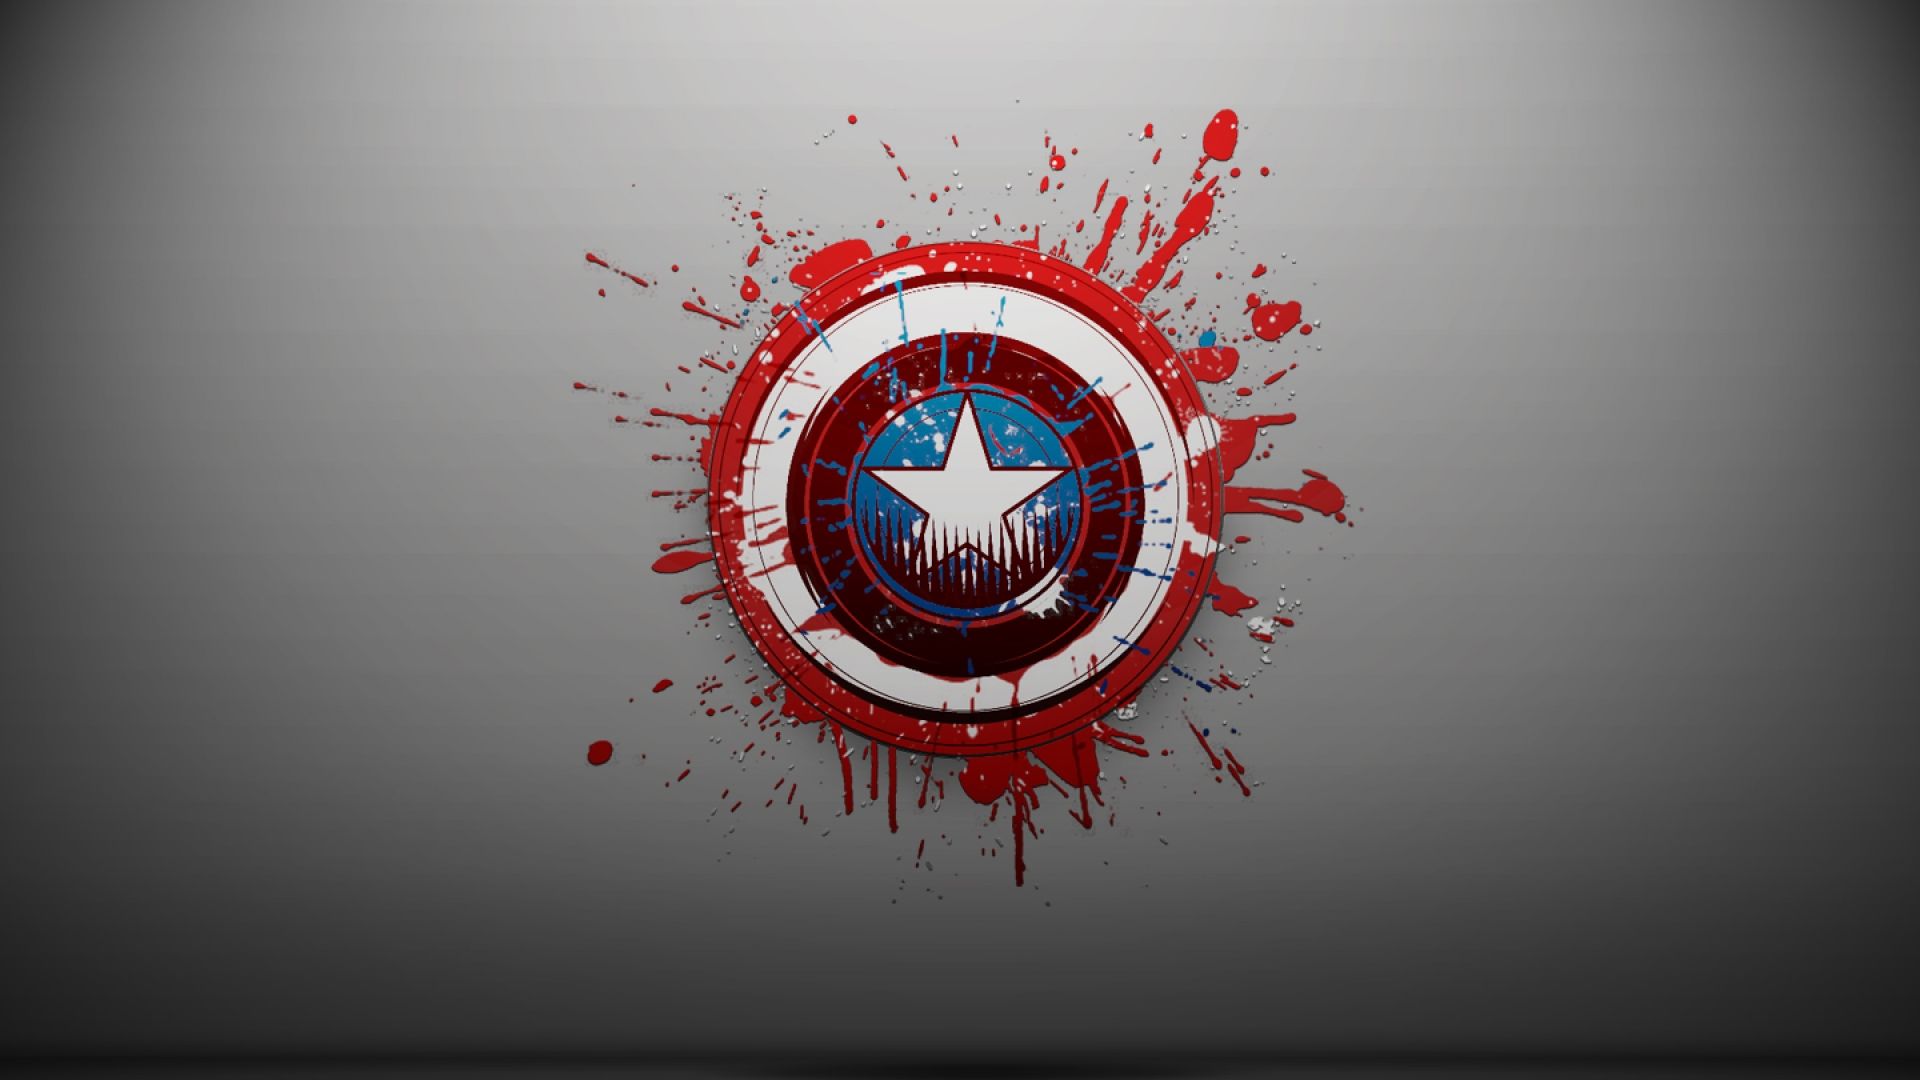 Captain America Wallpaper For Desktop